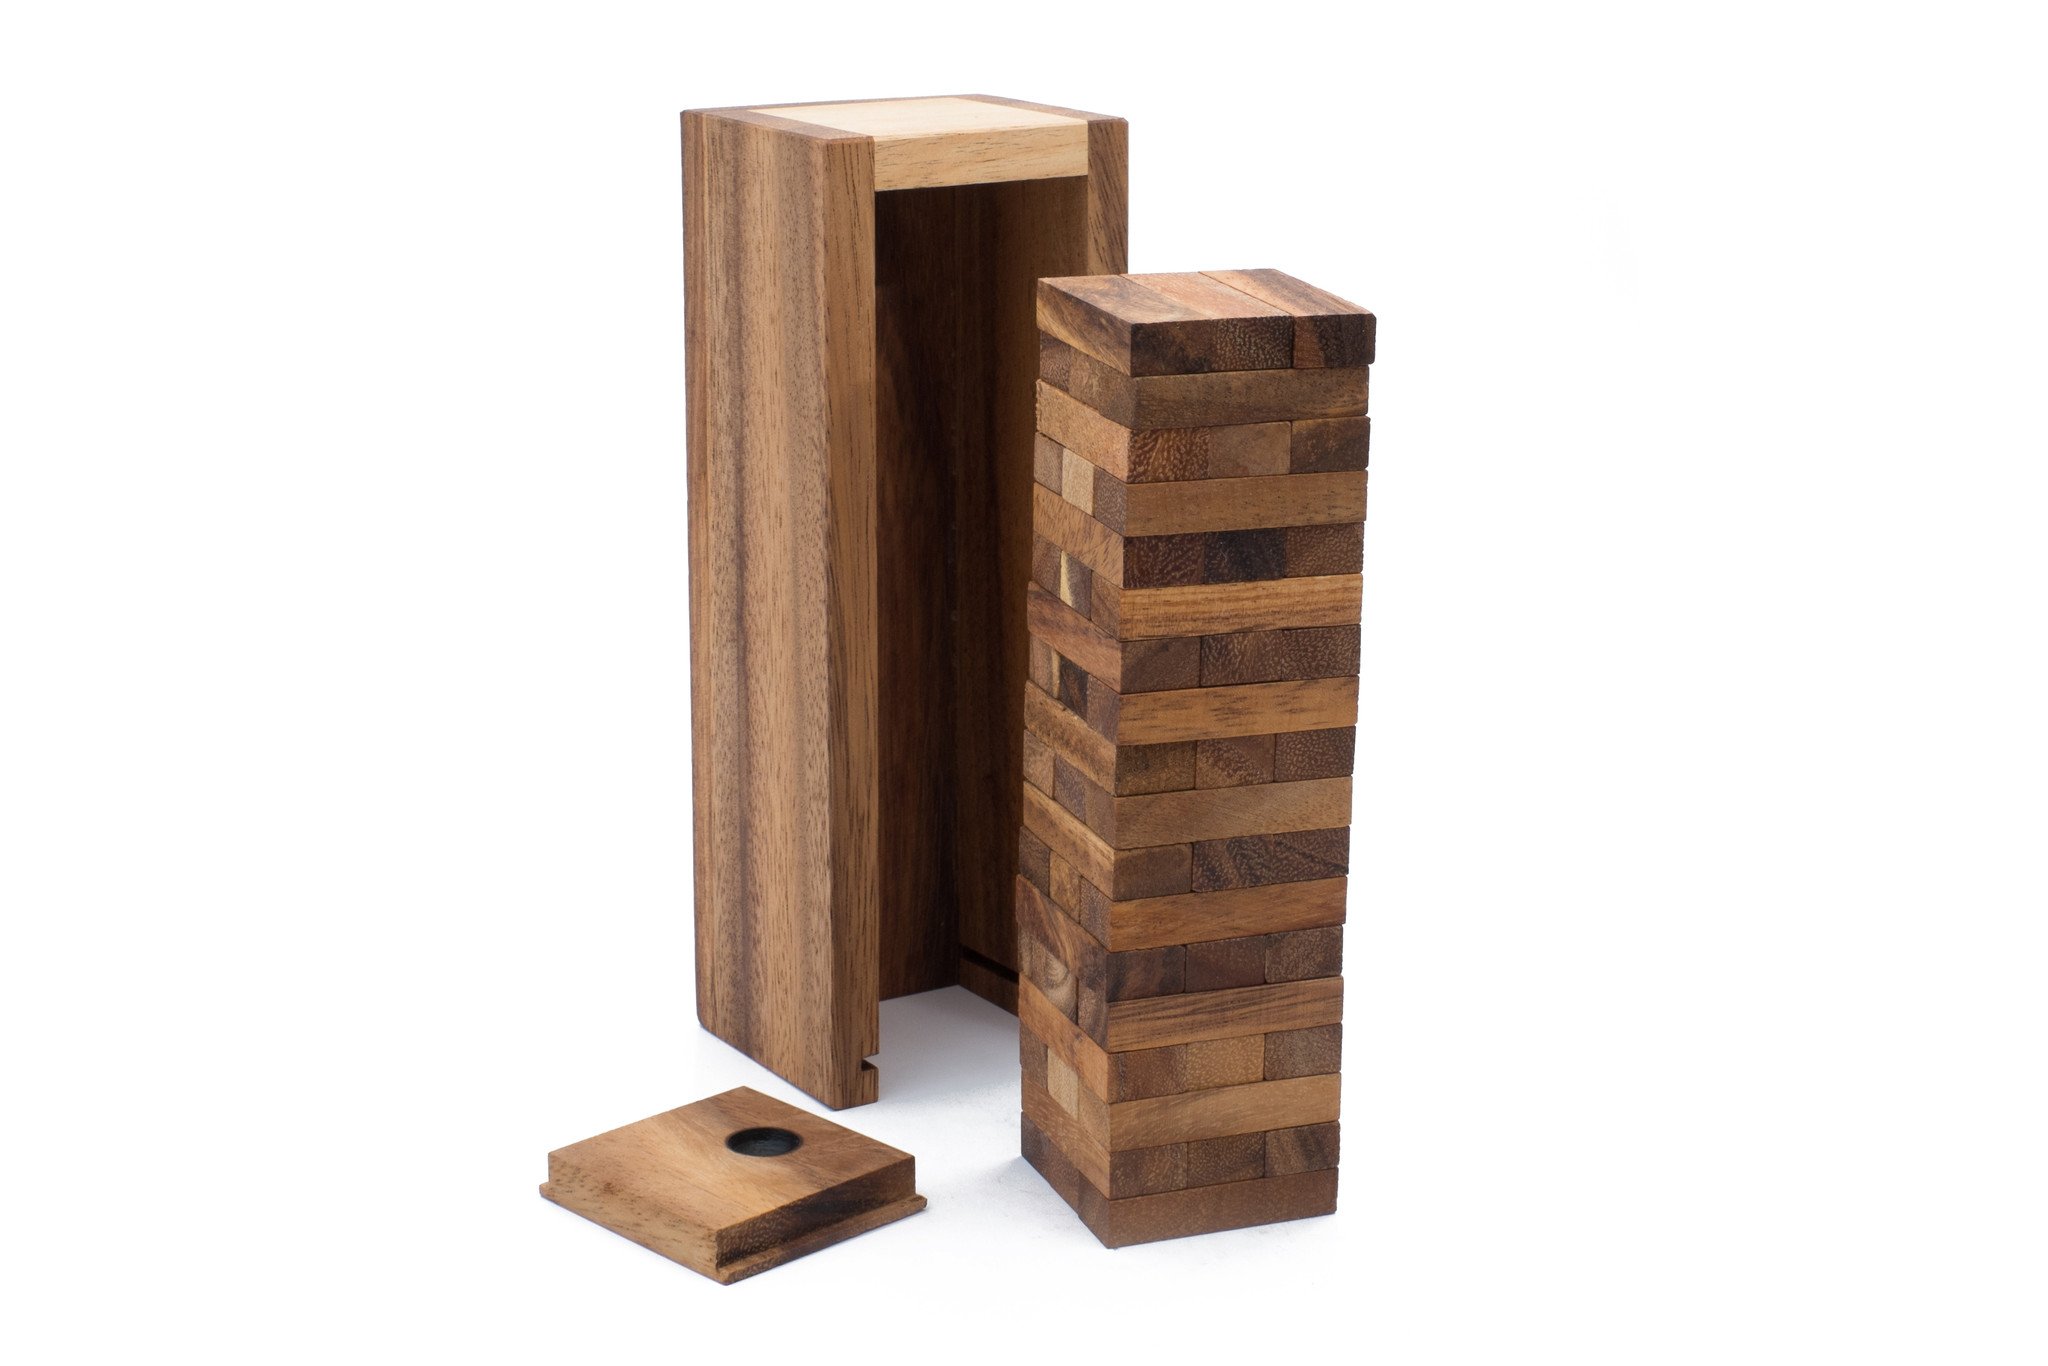 Stacking Blocks Game | High-Rise Wooden Block Tower